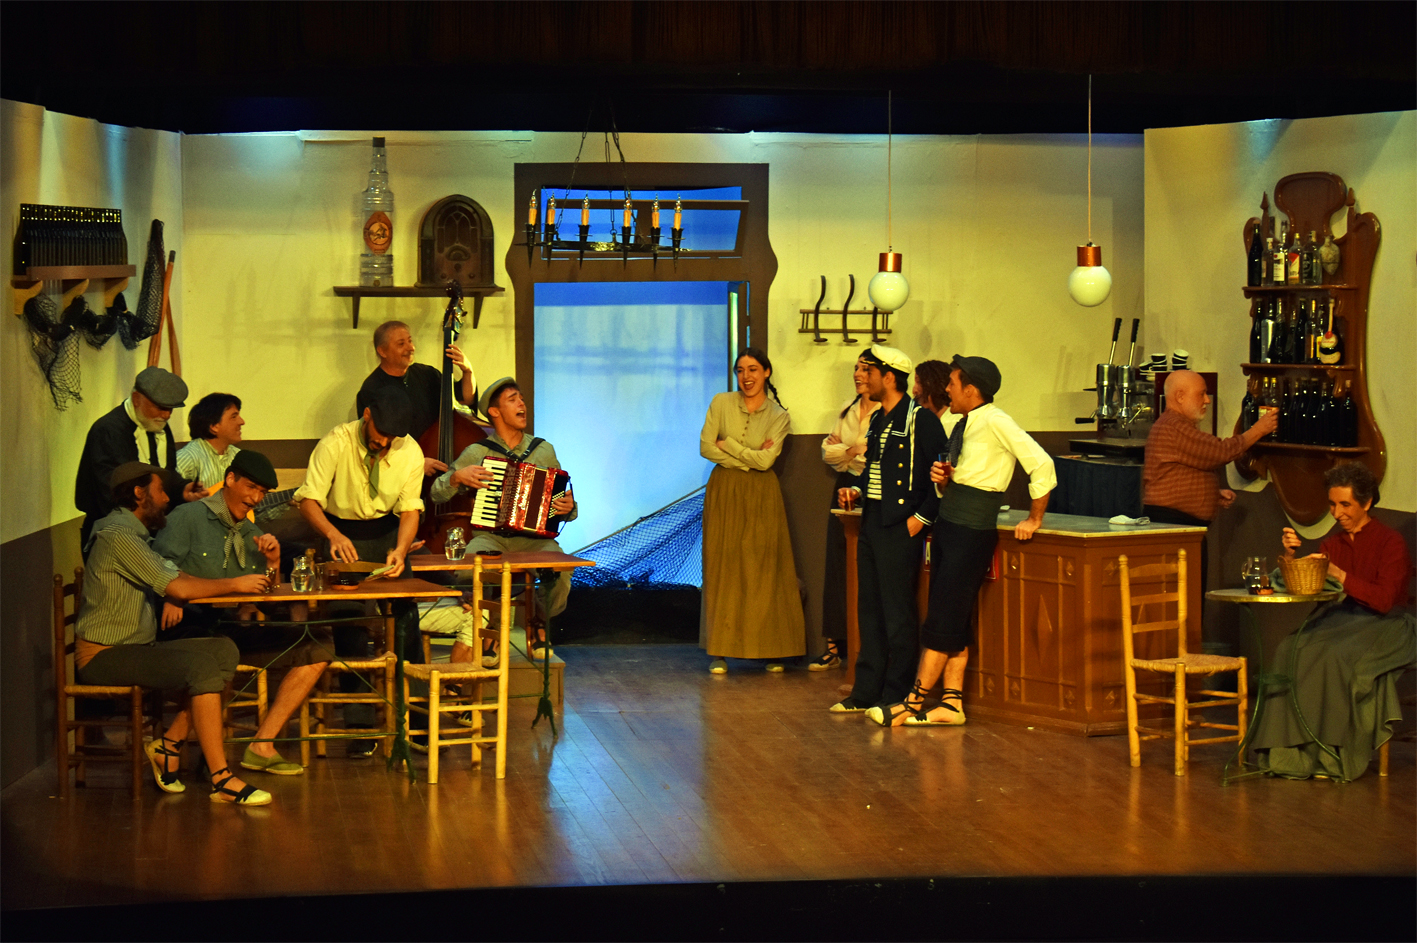 Escena de l'obra teatral 'El Cafè de la Marina' de Josep Maria de Sagarra, a càrrec del Grup de Teatre del Foment Cultural, dins del programa de la Festa de Sant Sebastià.